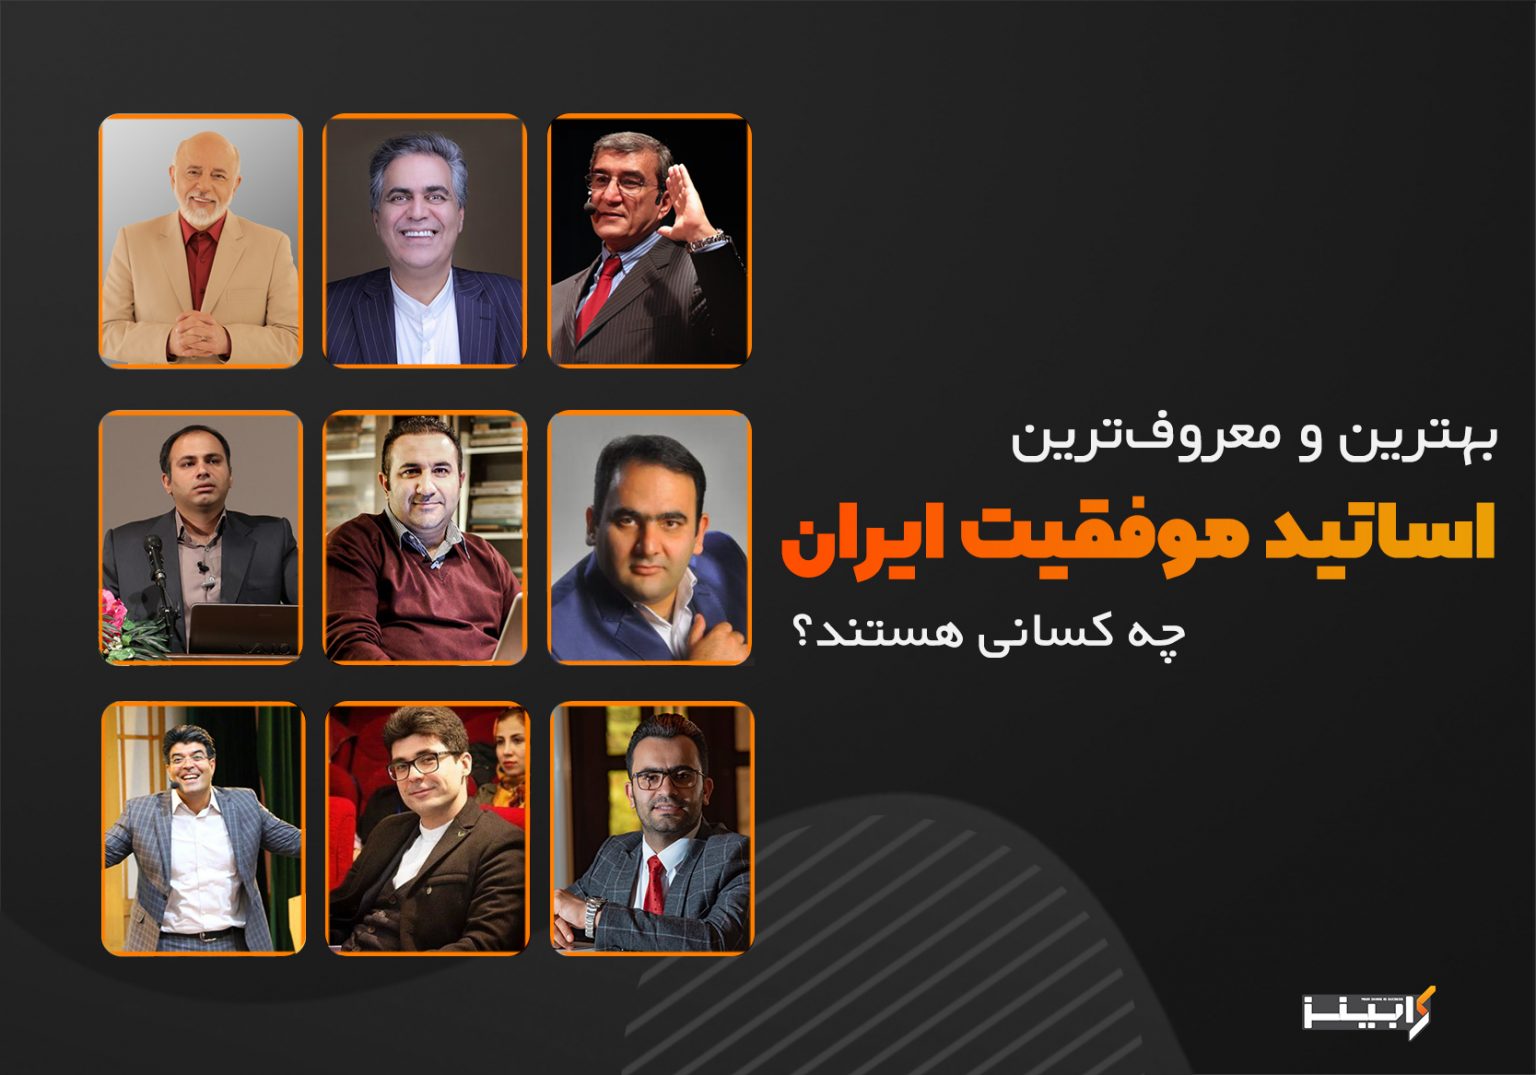 بهترین و معروف ترین اساتید موفقیت ایران چه کسانی هستند؟